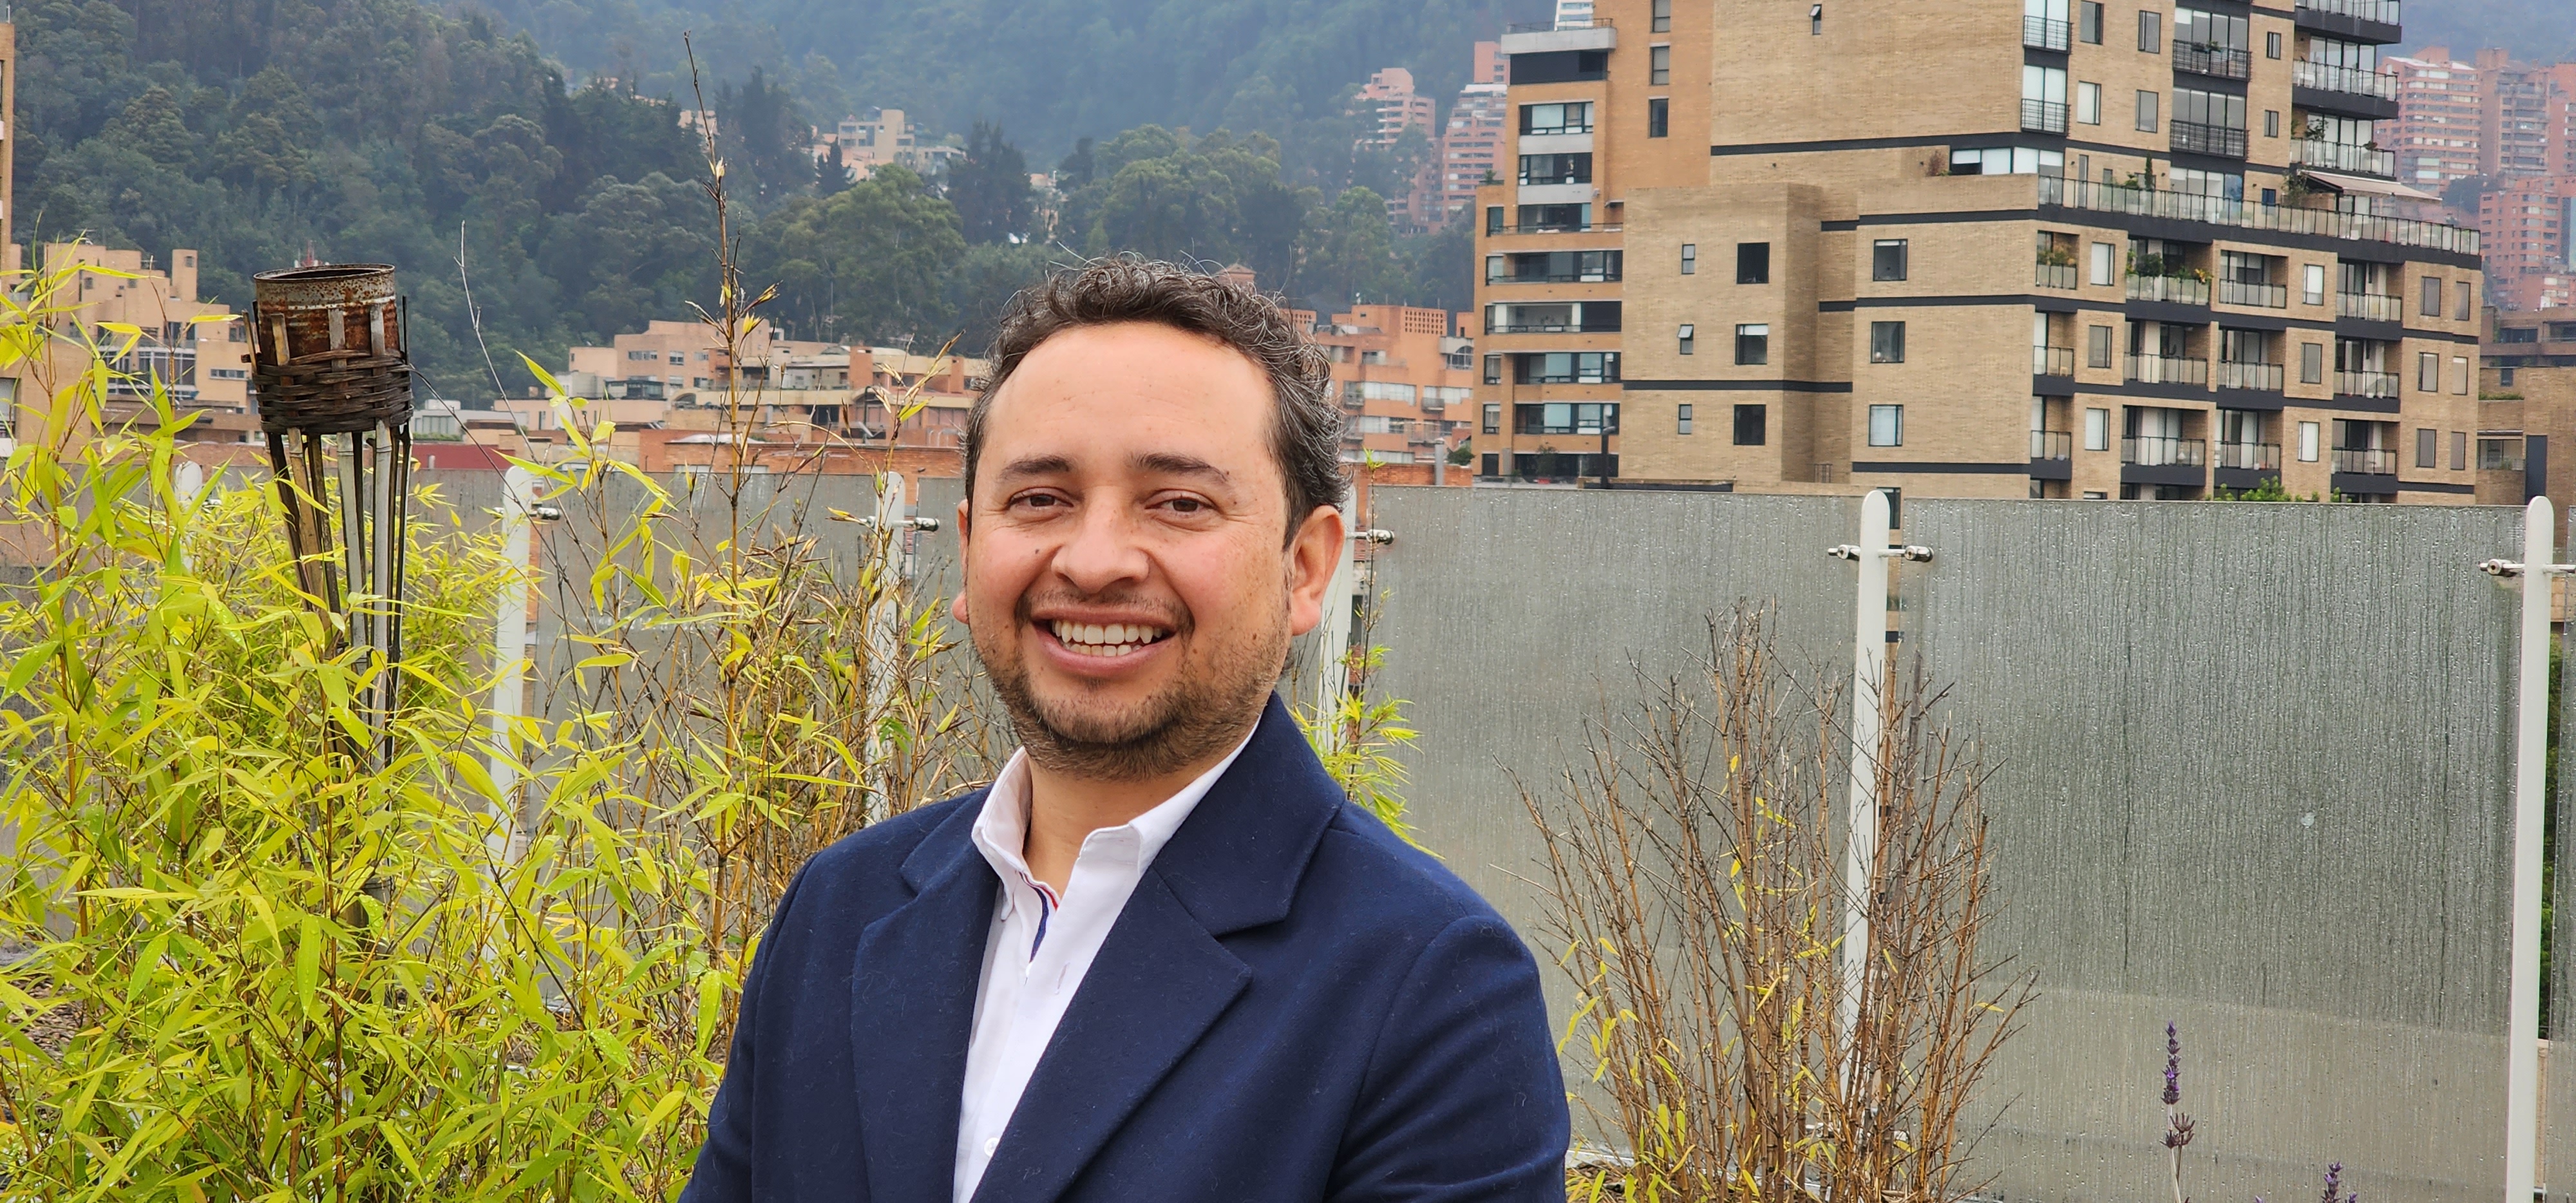 el director administrativo y financiero de APC-Colombia, Alexander Valderrama, sonriendo